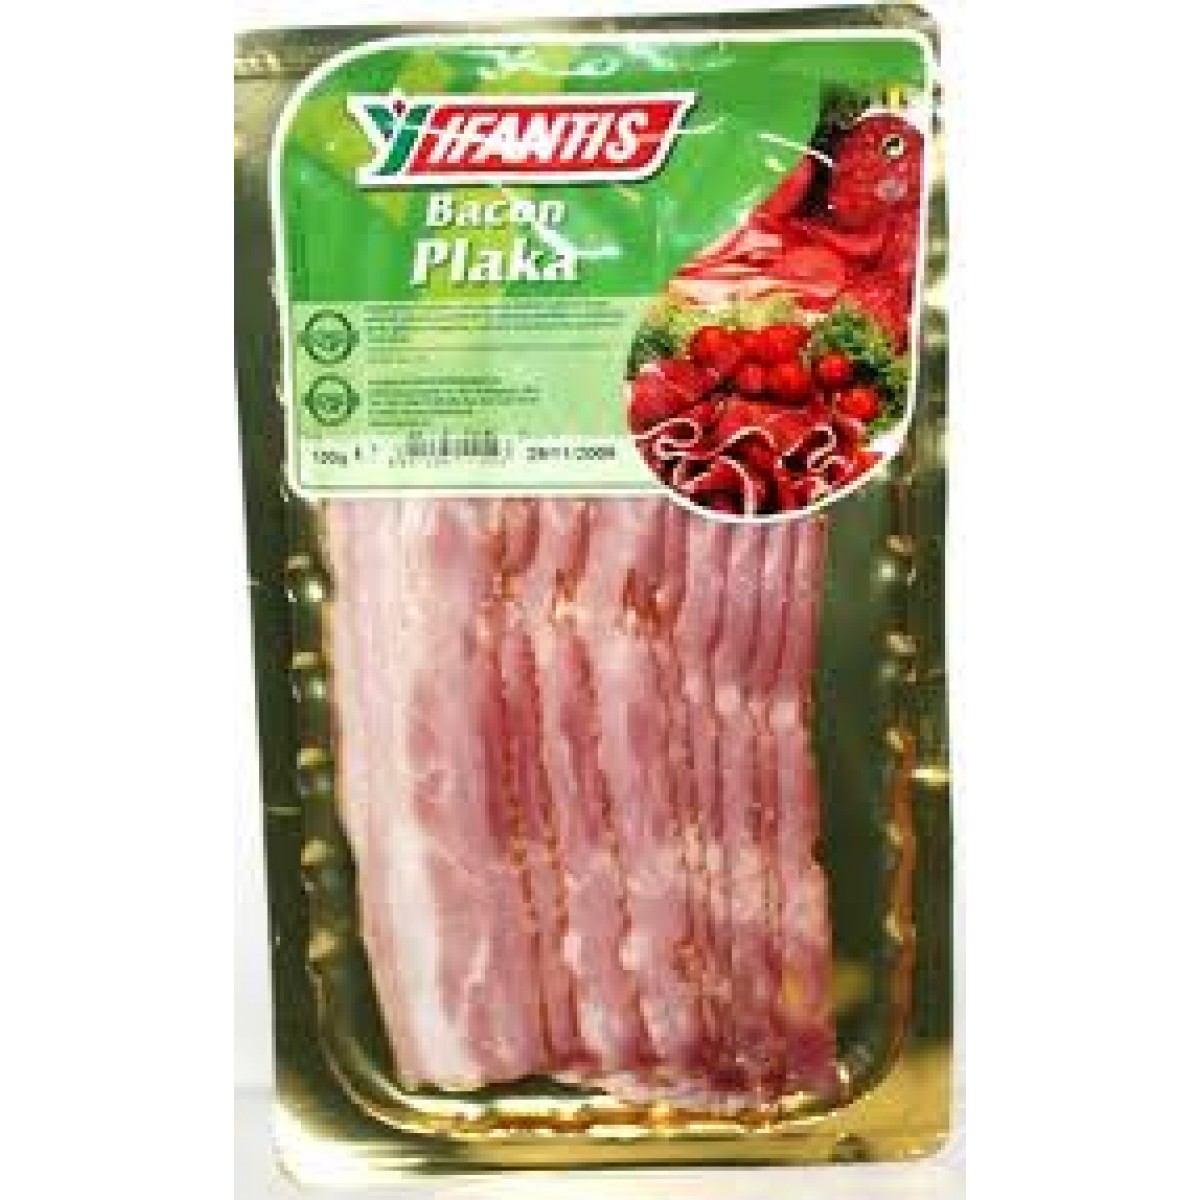 Ifantis Bacon Plaka